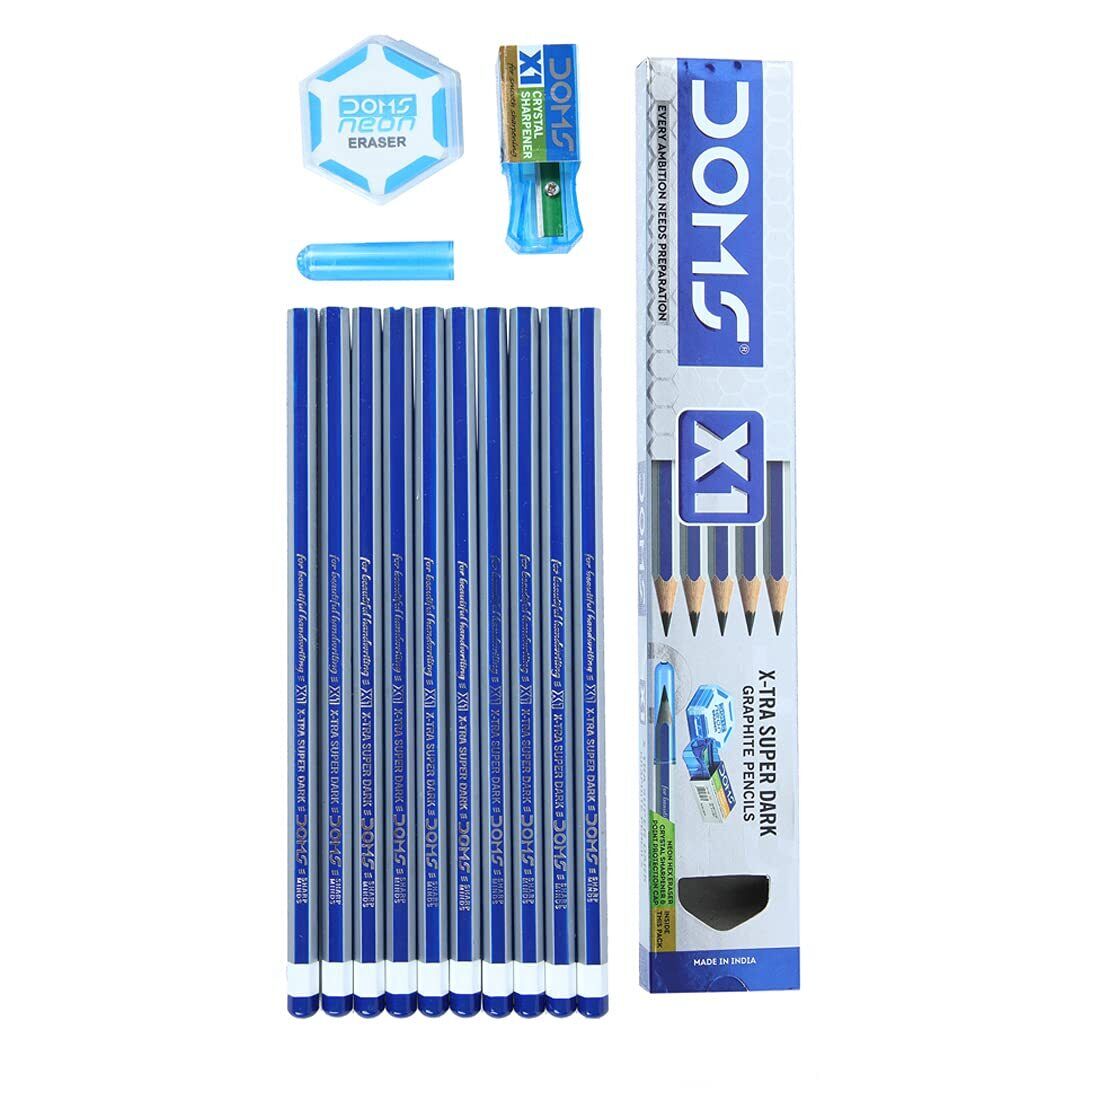 Doms X1 Xtra Super Dark Pencils Box Pack of 10 | Hexagonal Shape Artist-grade